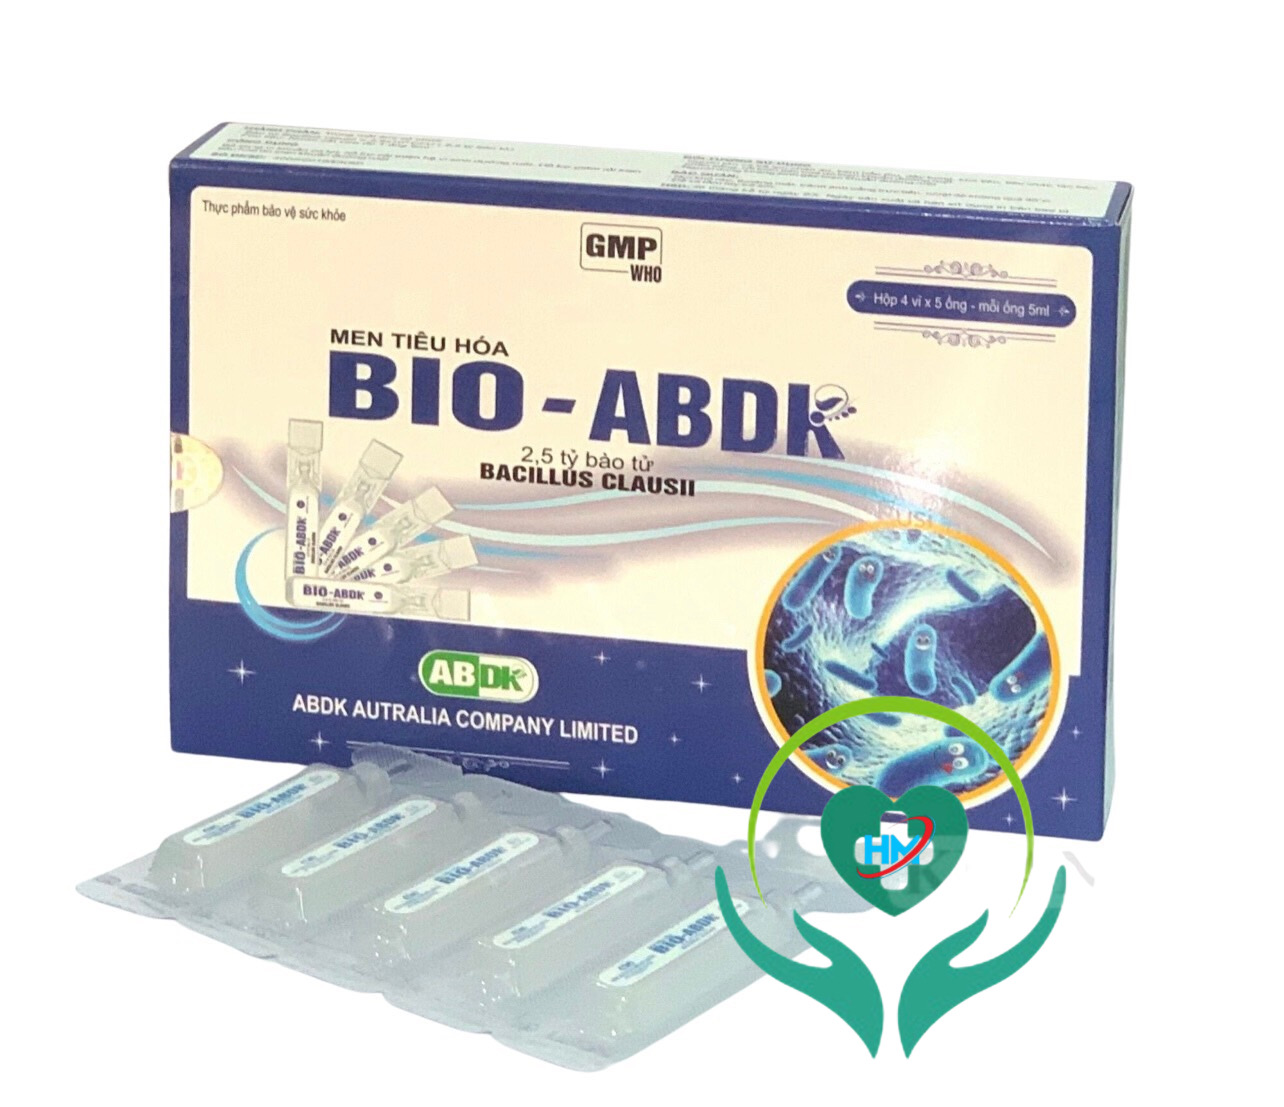 ￼Men Tiêu Hóa  BIO - ABDK Hộp 20 ống - Giúp cân bằng hệ vi sinh đường ruột trong trường hợp loạn khuẩn đường ruột, Lisse